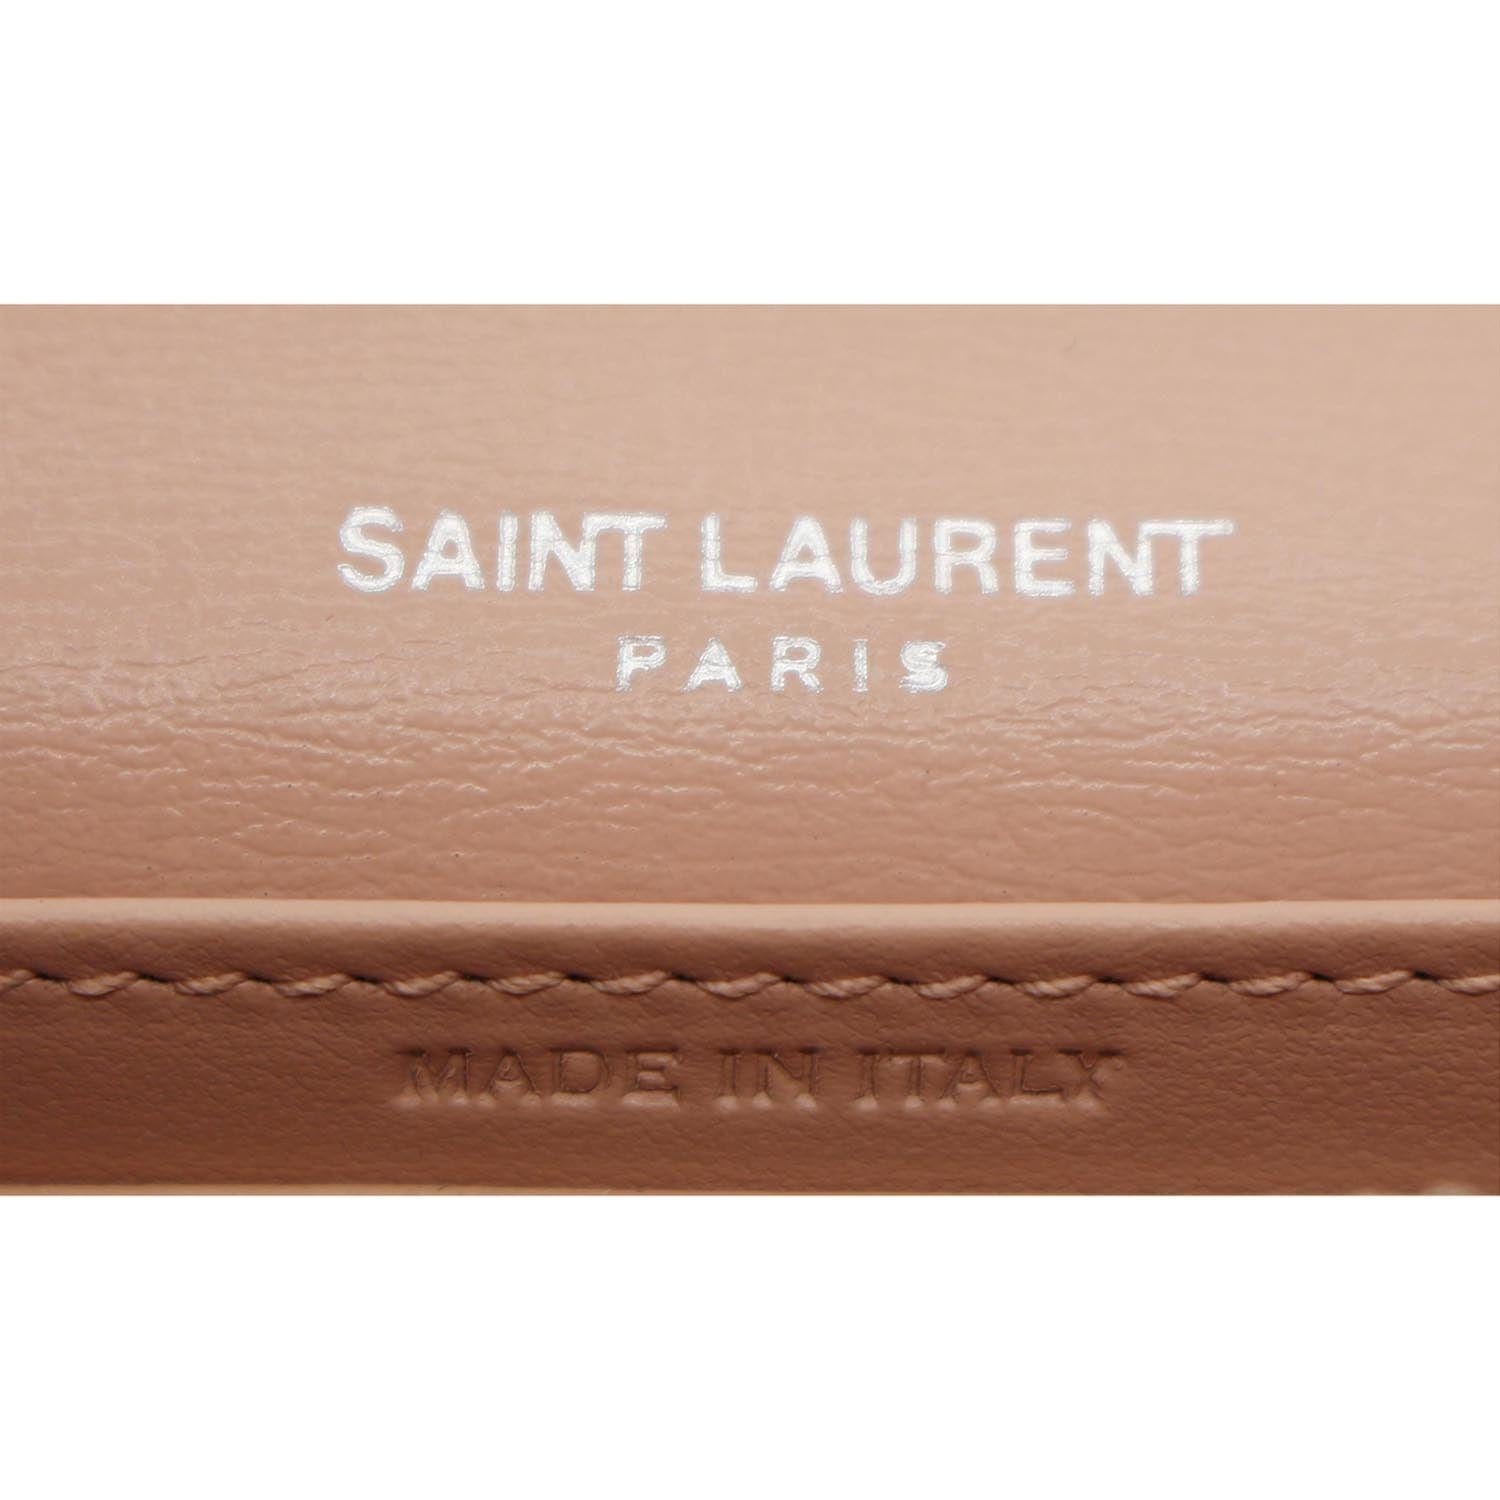 Yves Saint Laurent Sunset Calfskin Leather Shoulder Bag